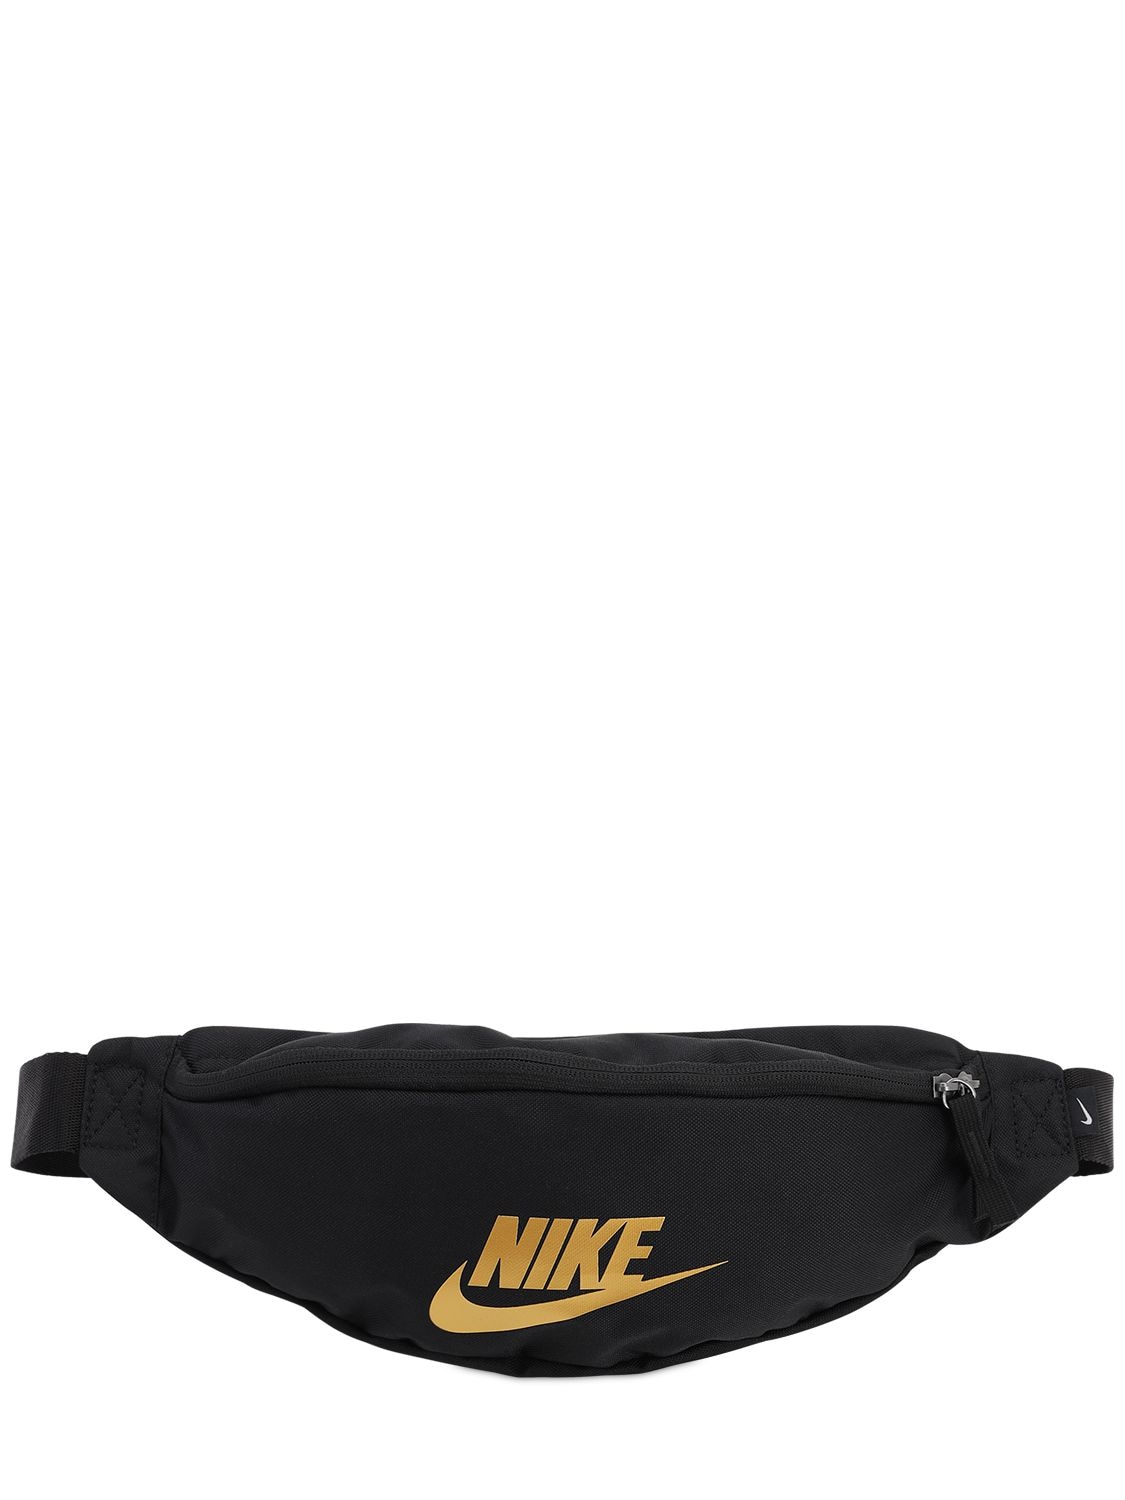 black and gold belt bag